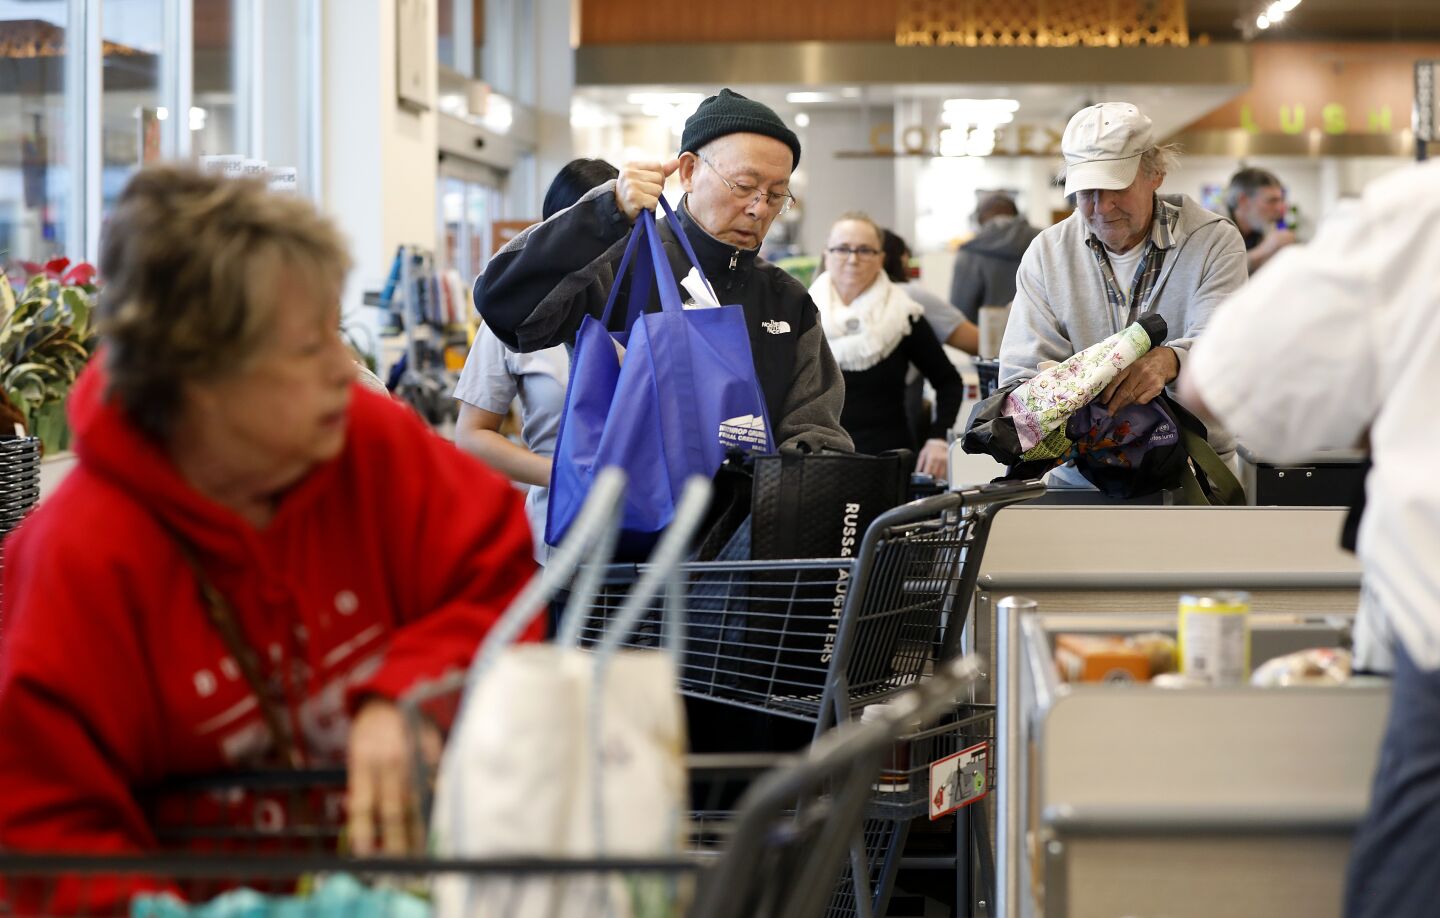 Priority shopping for seniors